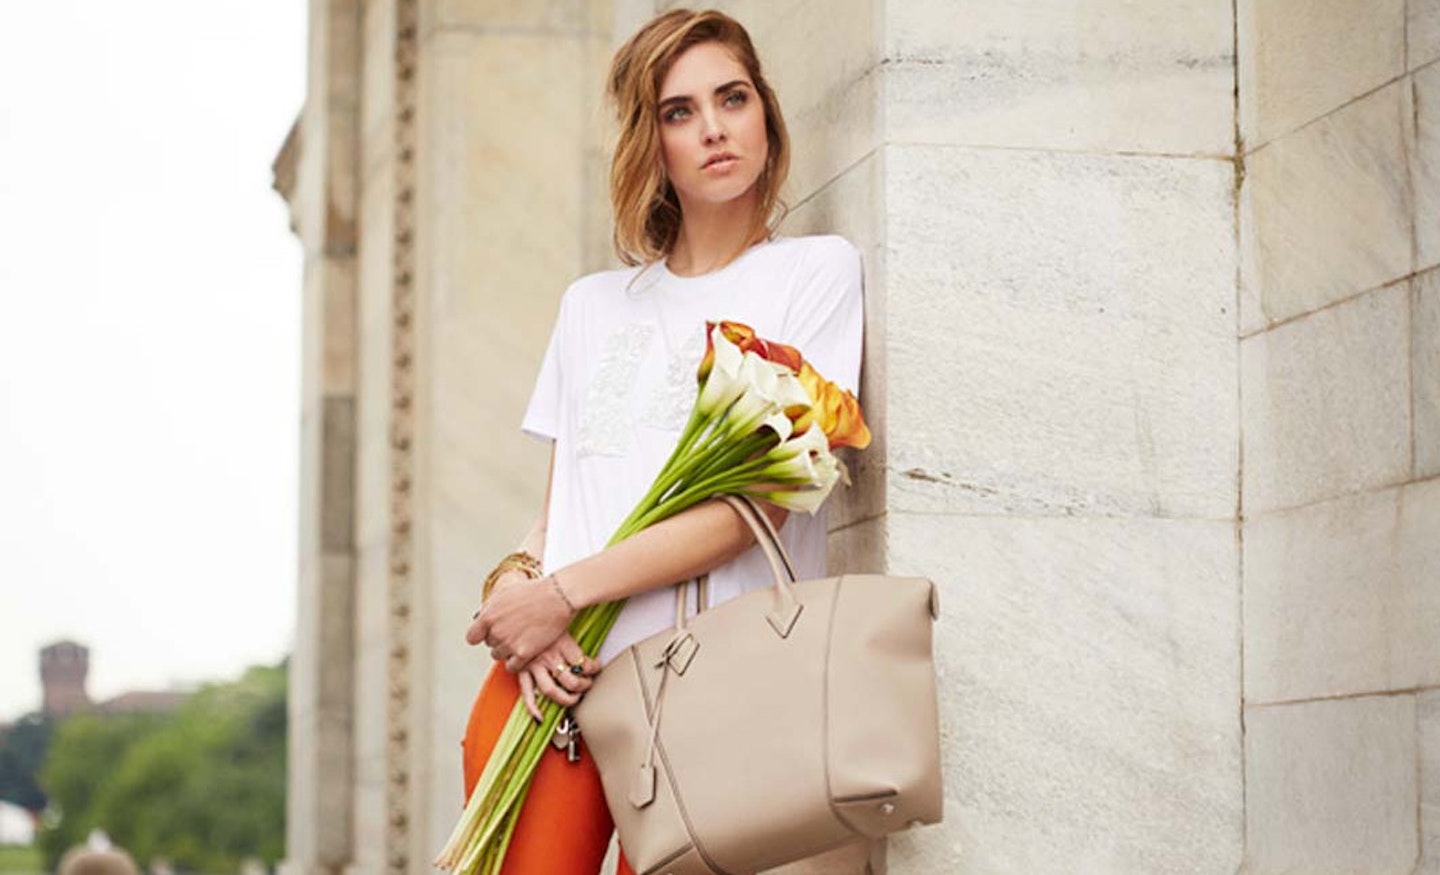 Chiara Ferragni for Louis Vuitton: lifestyle photoshoot - The